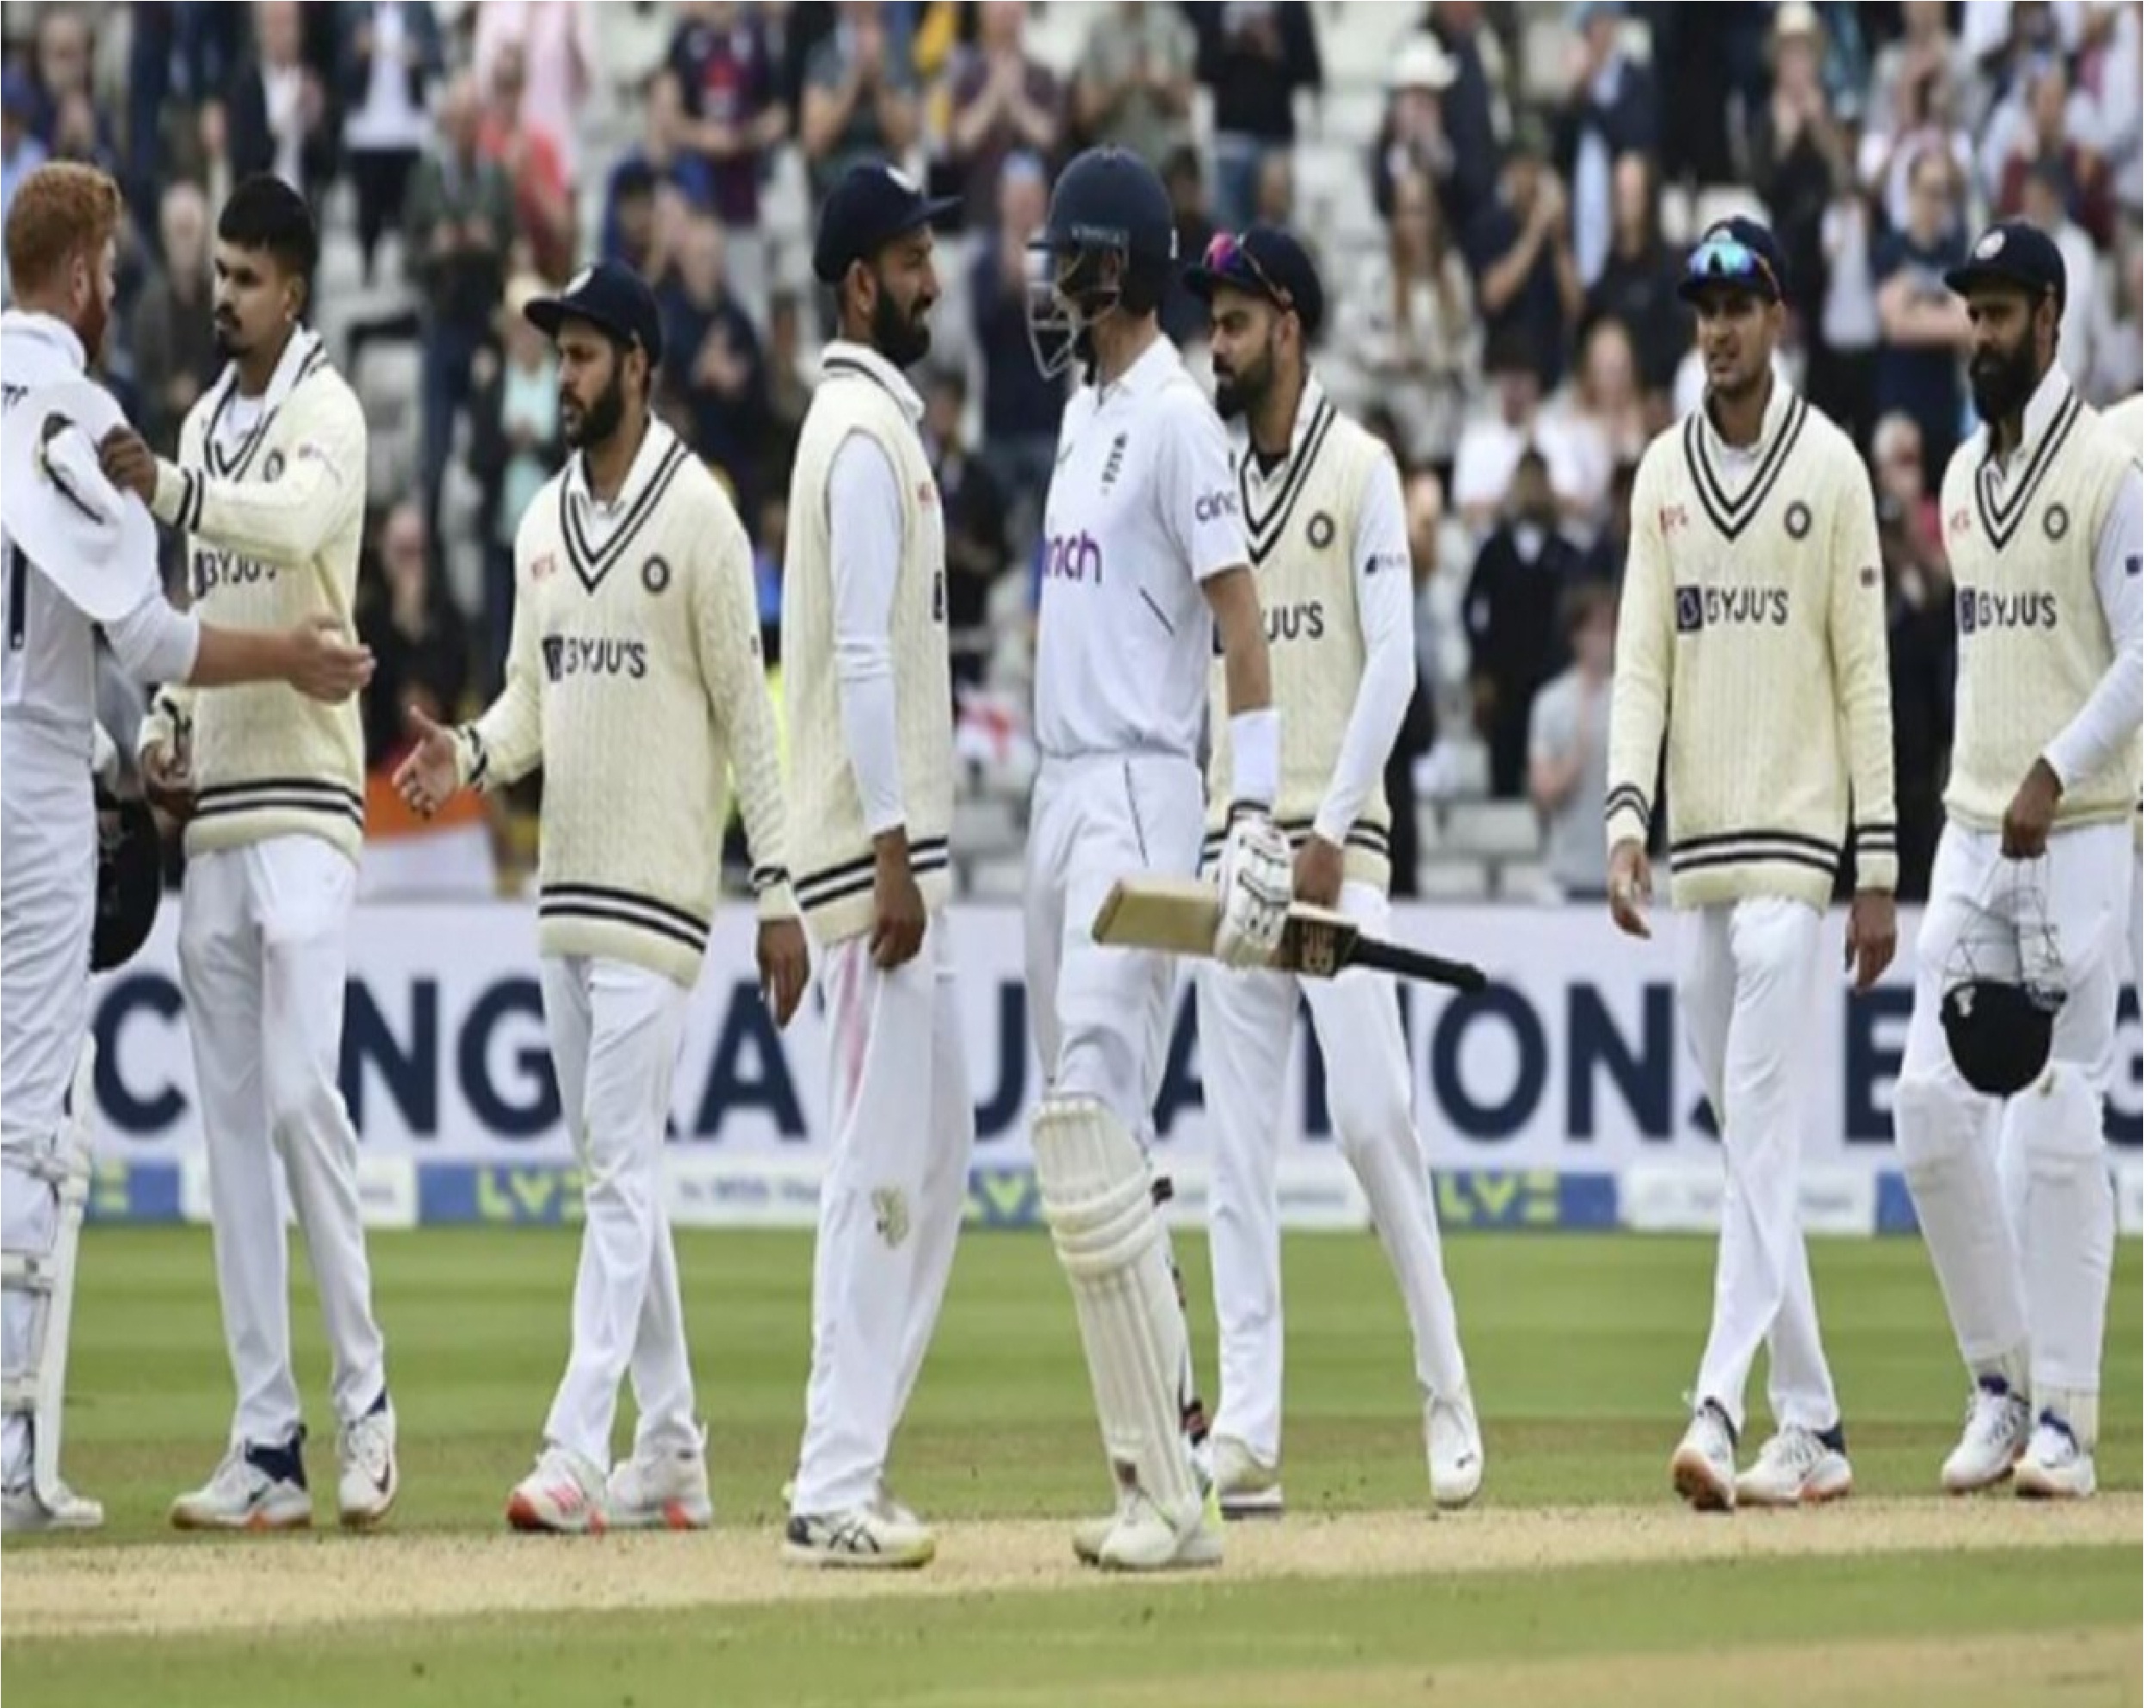 New Delhi: न्यूजीलैंड ने फॉलोऑन के बाद इंग्लैंड को हराया, भारत के बराबर पहुंचा